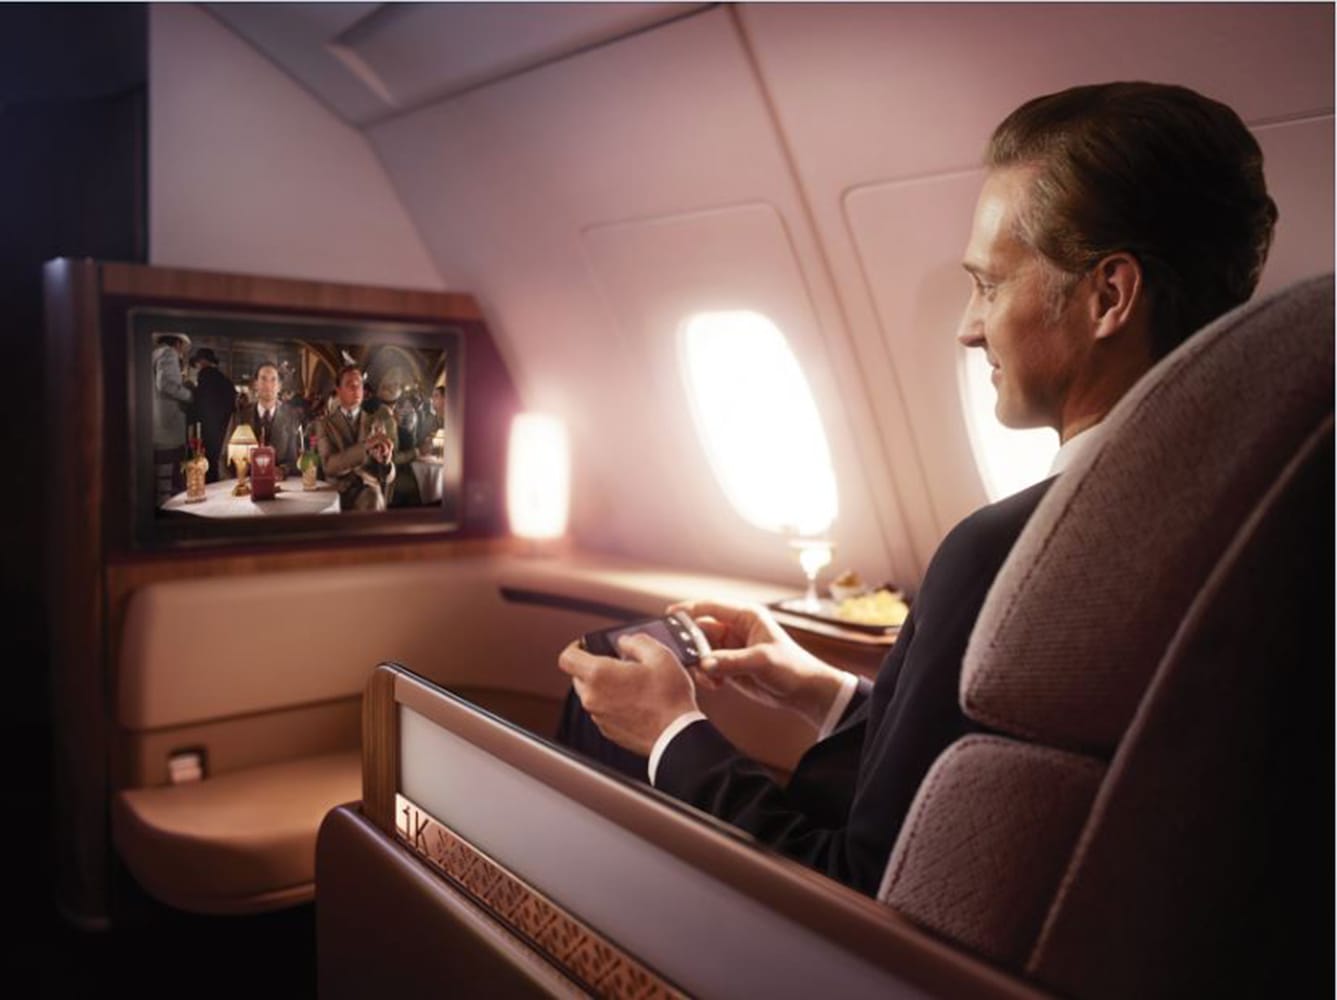 Für kurzweilige Unterhaltung sorgt bei Qatar Airways ein preisgekröntes Unterhaltungsprogramm.